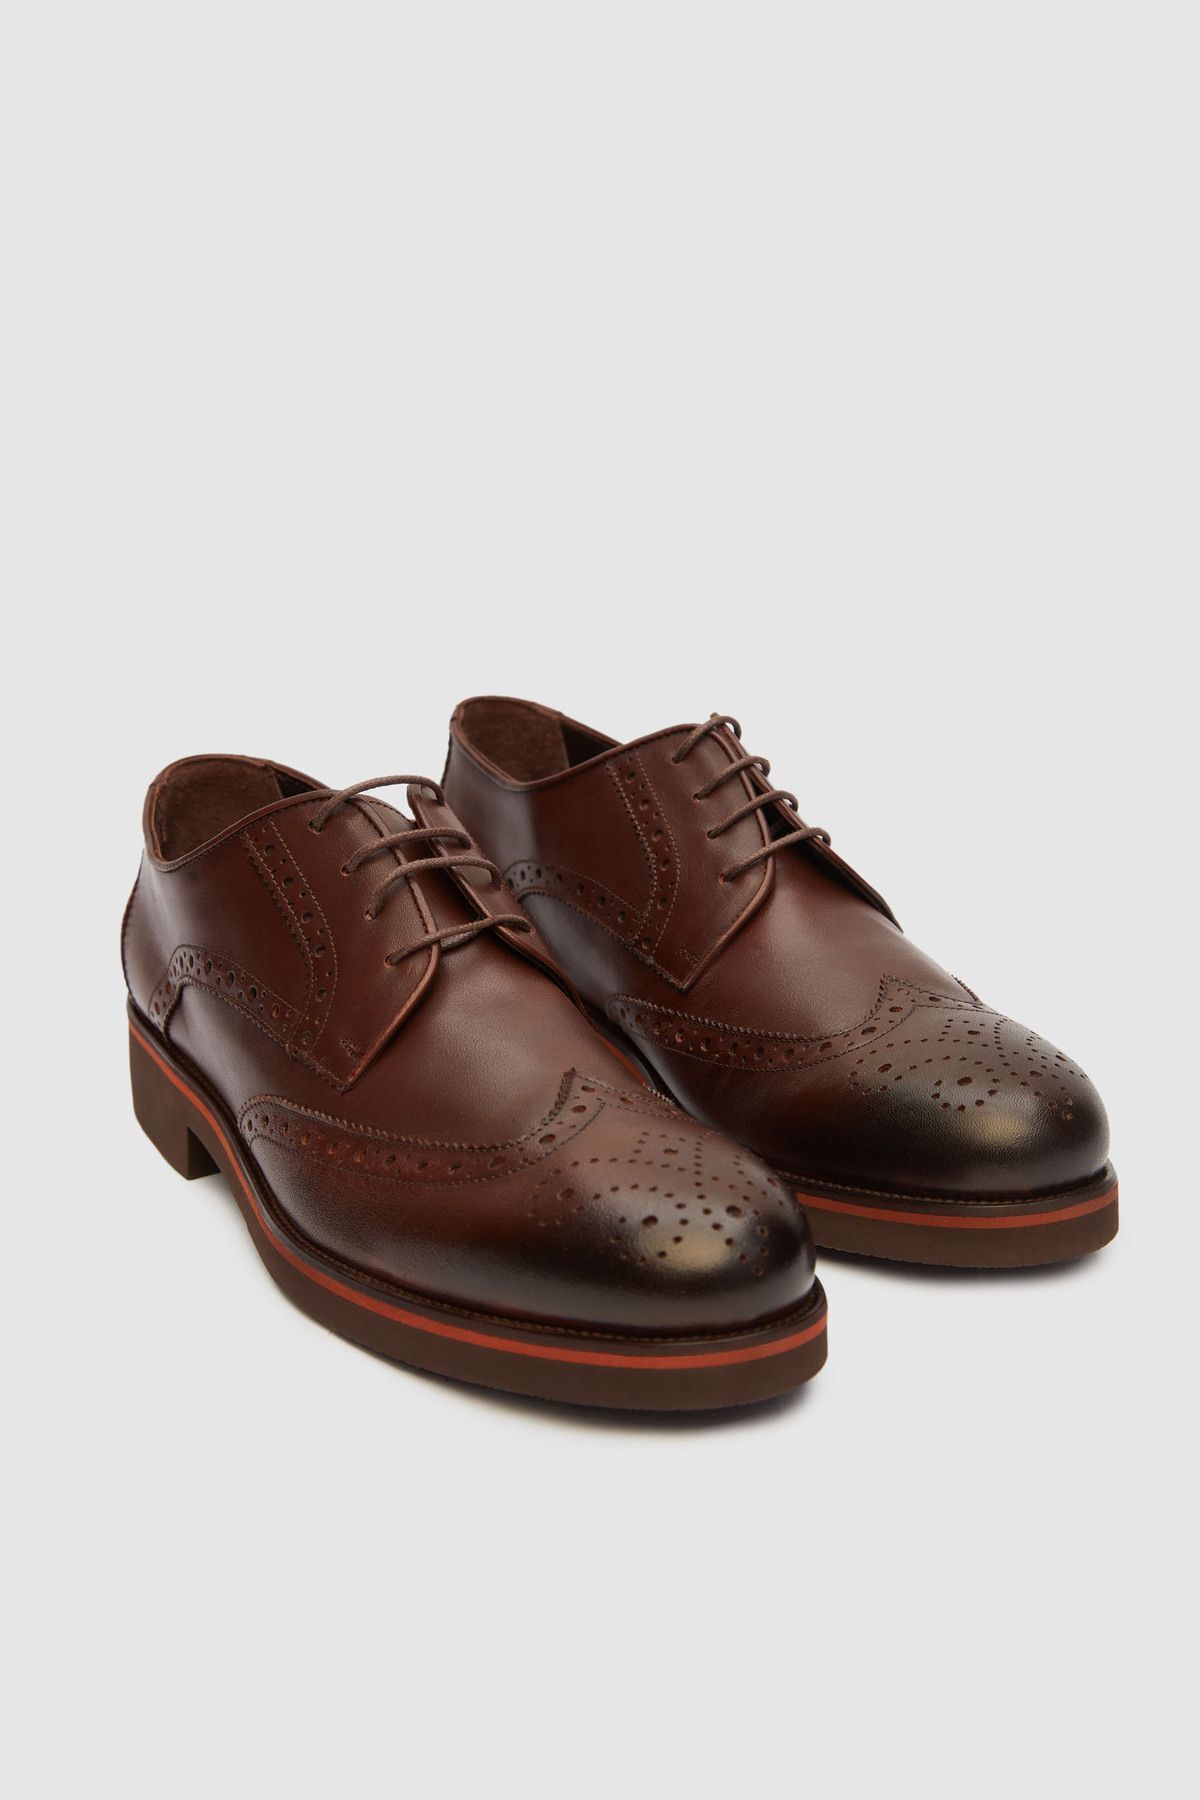 D'S Damat Ds Damat Kahverengi Klasik Desenli Ayakkabı